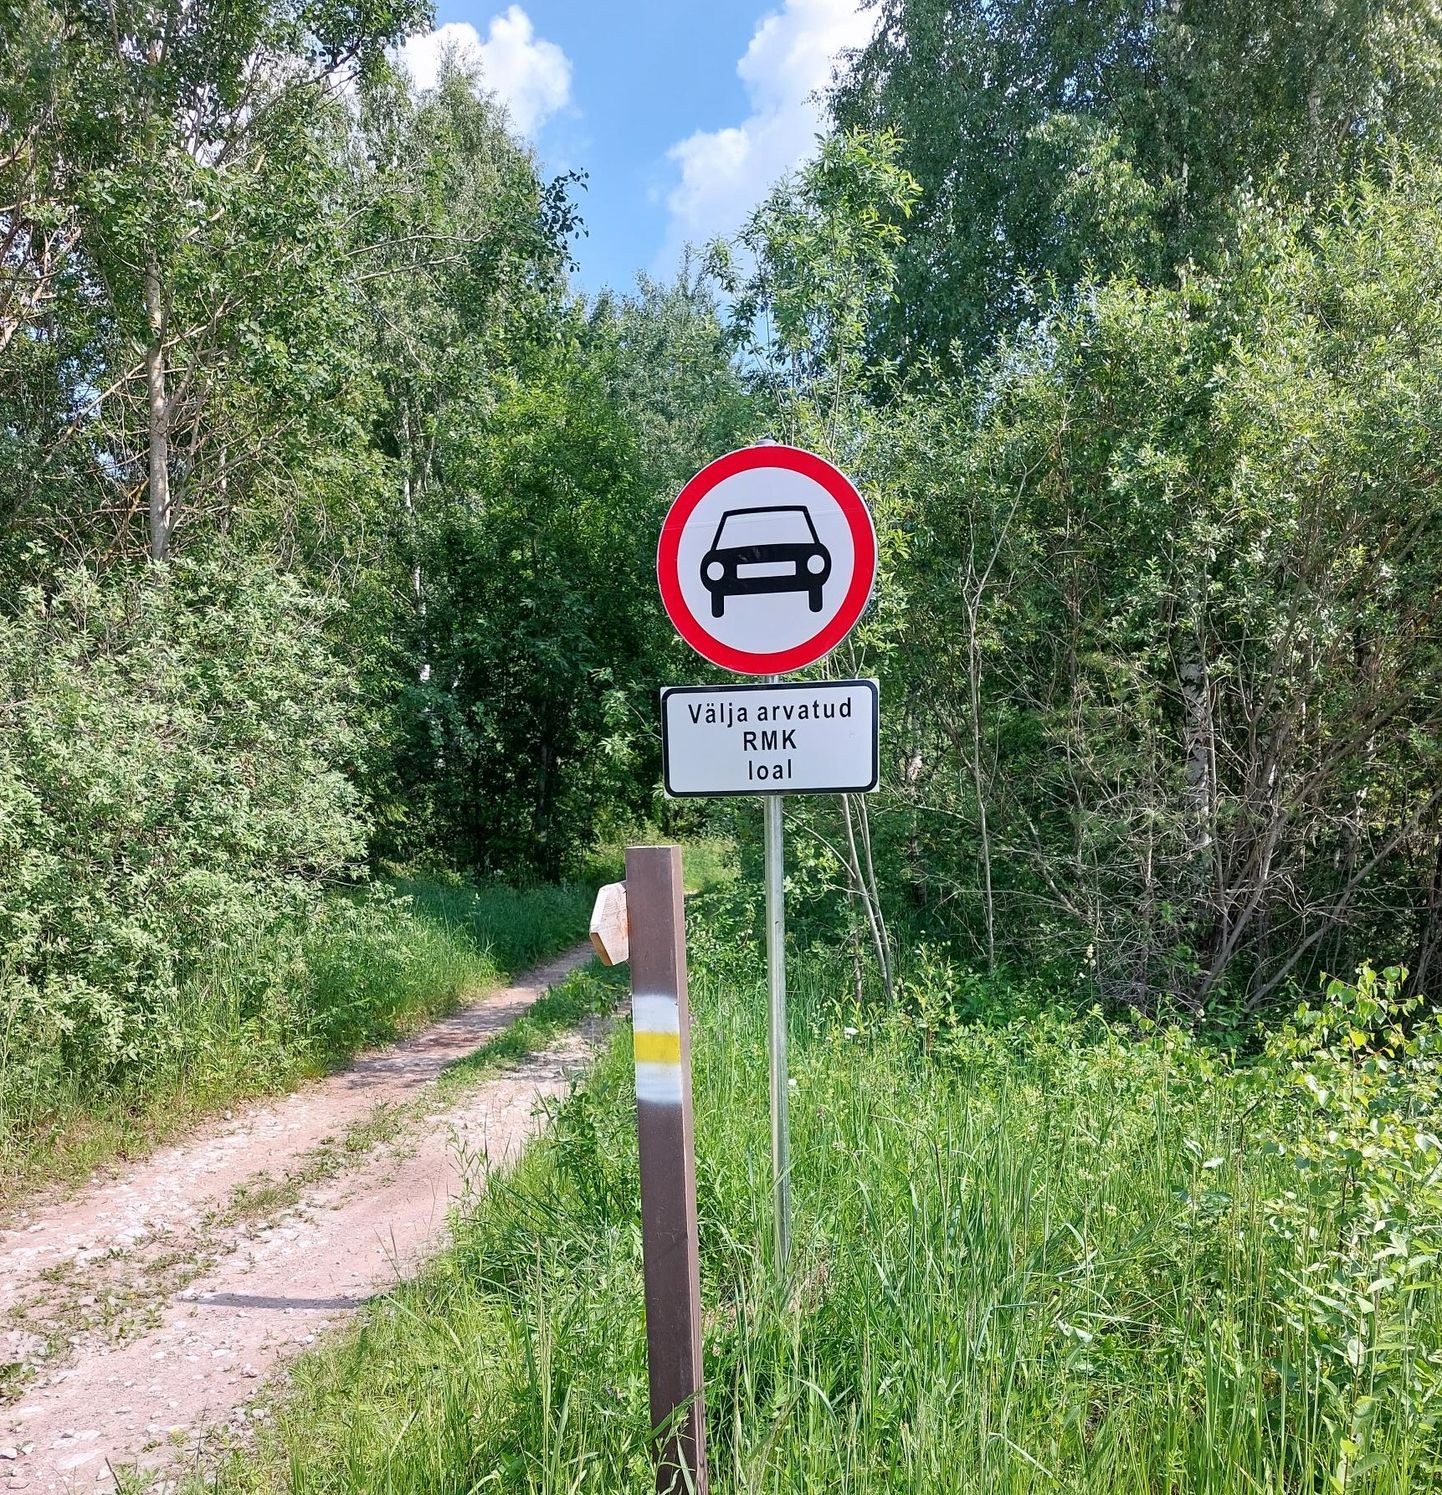 Центр управления государственными лесами по рекомендации Спасательного департамента установил дорожные знаки, запрещающие движение автотранспорта.